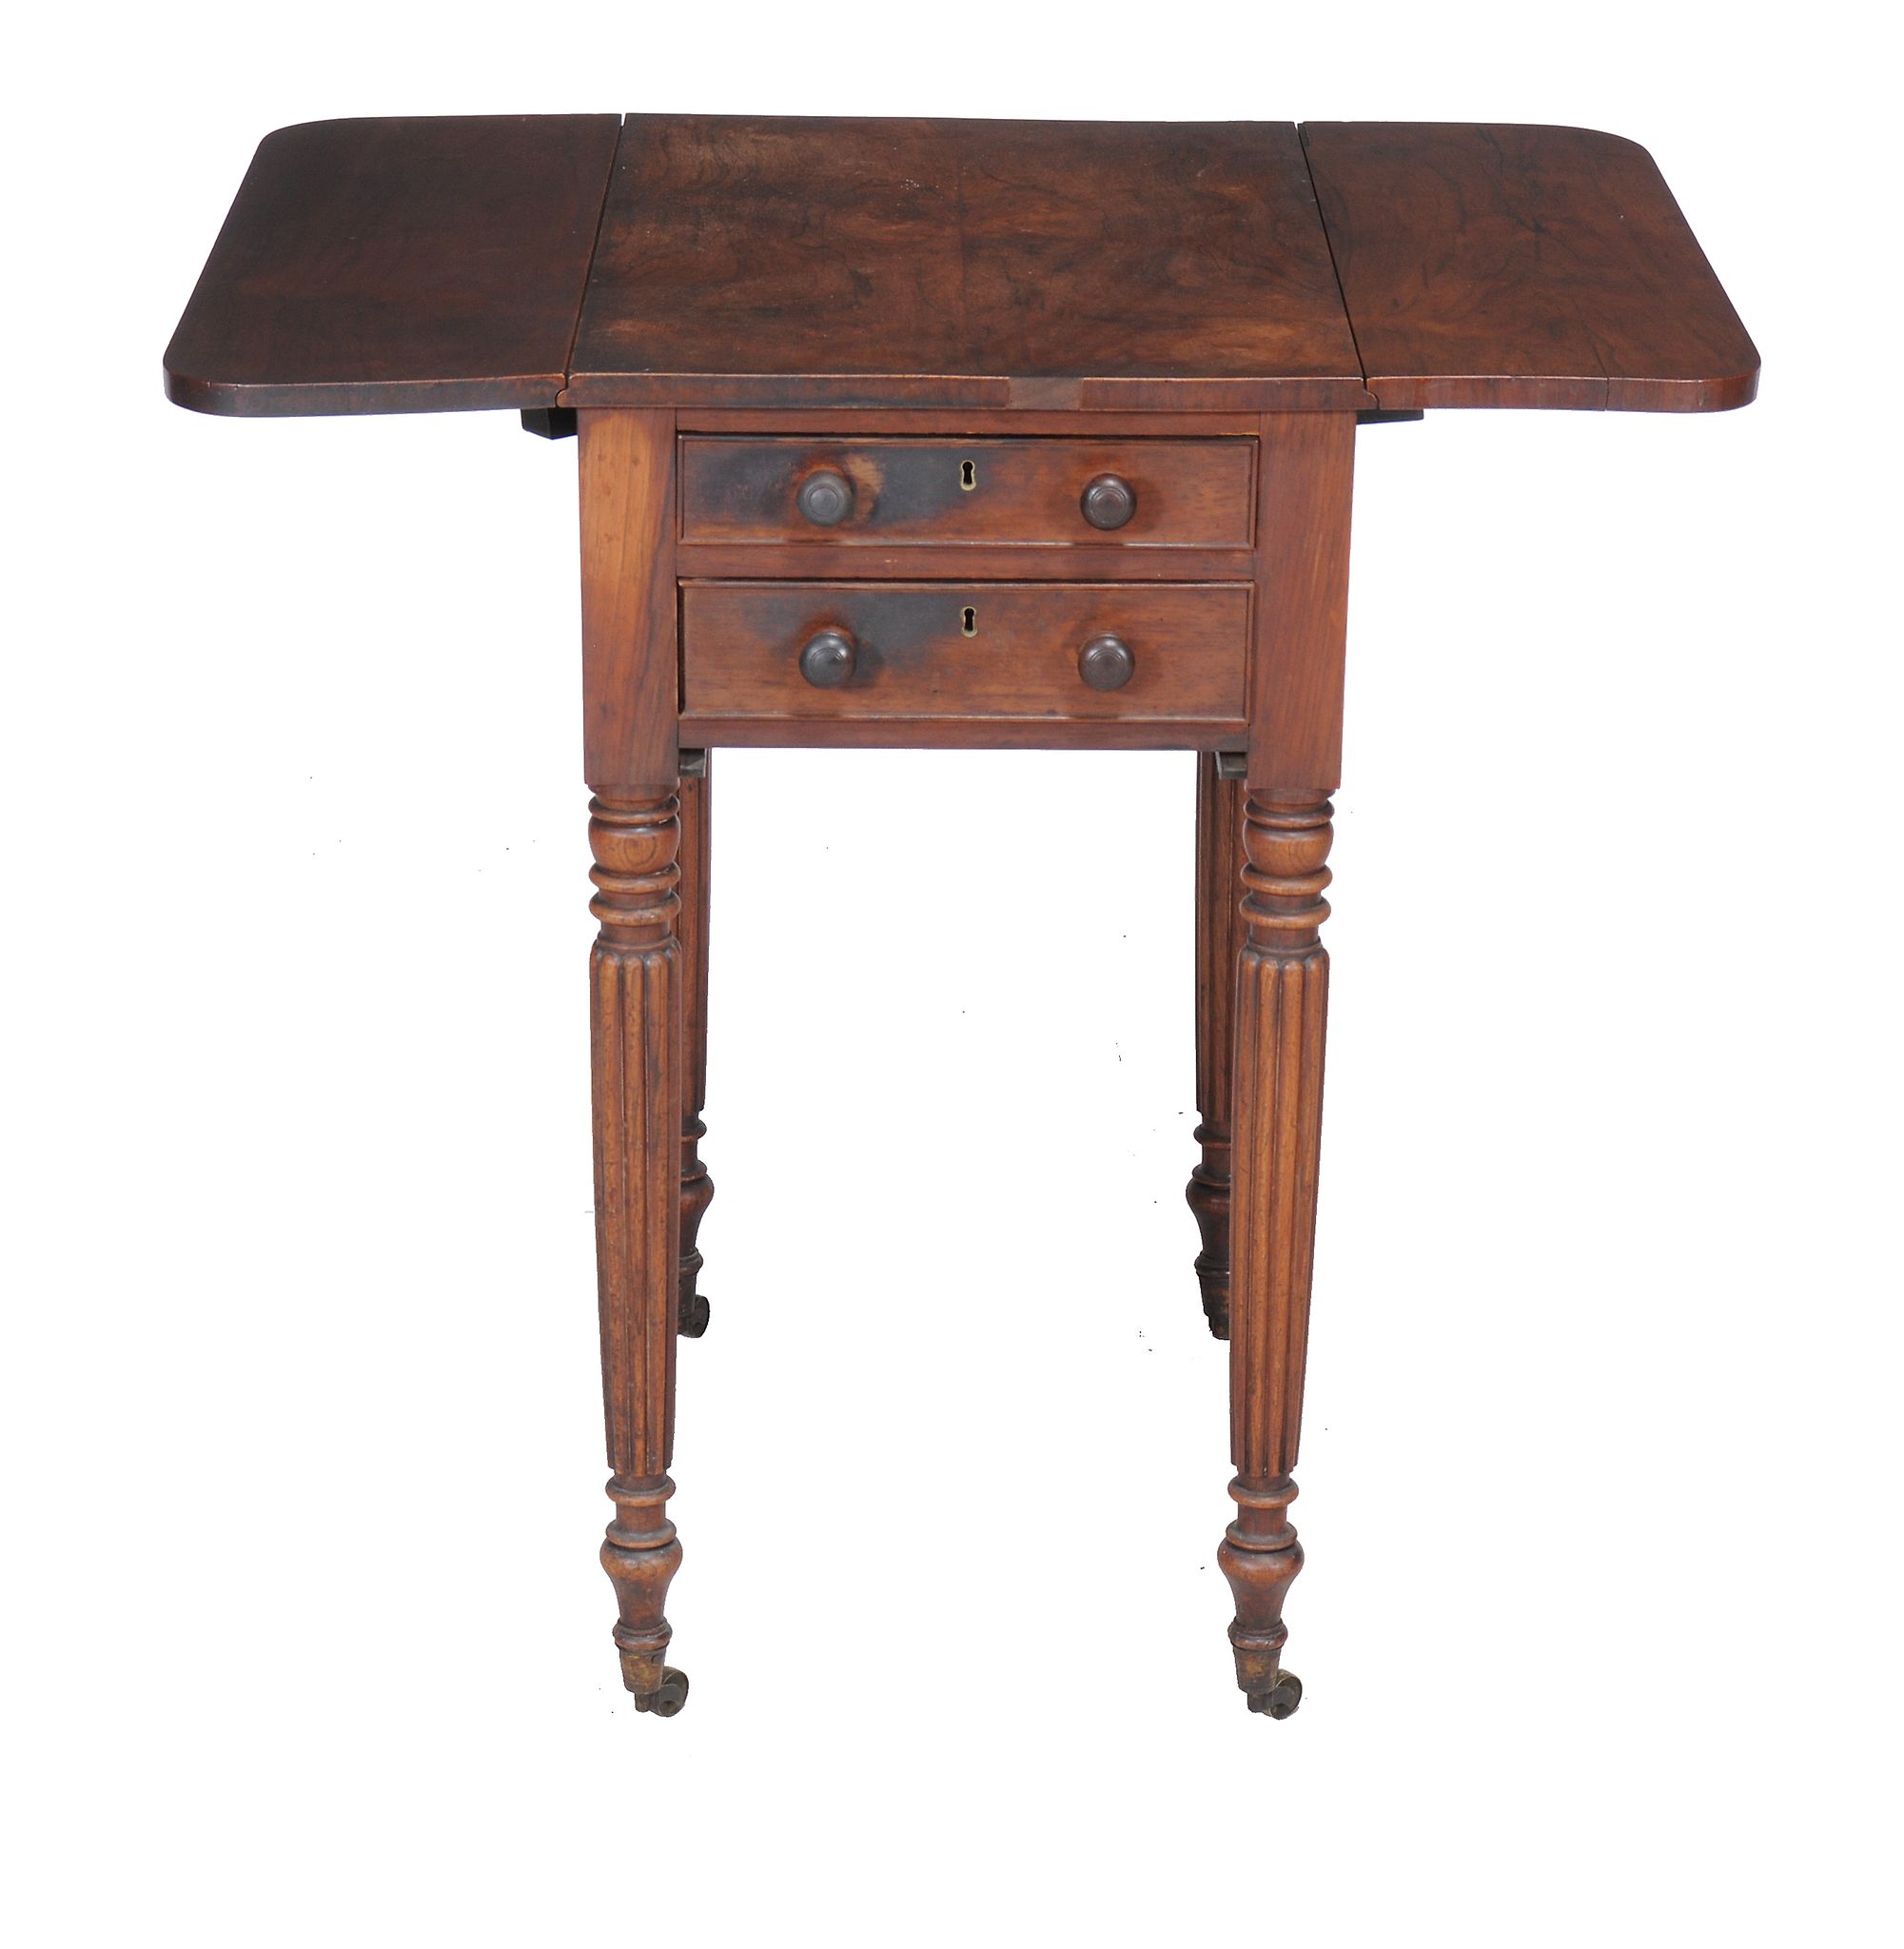 Ω A Regency rosewood drop-leaf work table, circa 1815 in the manner of Gillows, the book-matched top